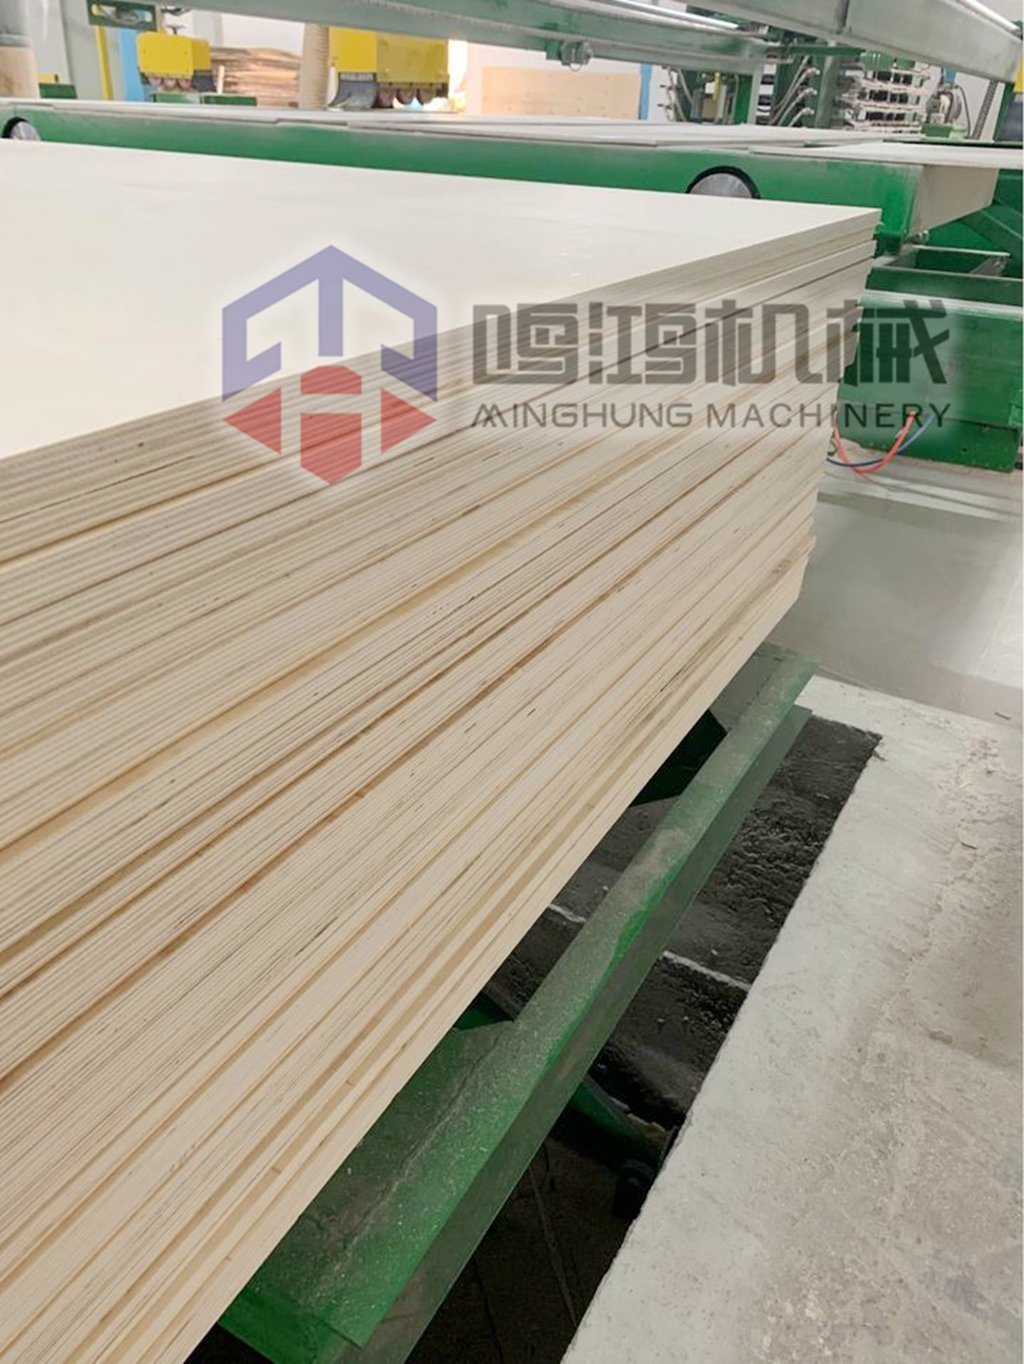 Plywood Edge Trimming Saw Dari Pabrik China